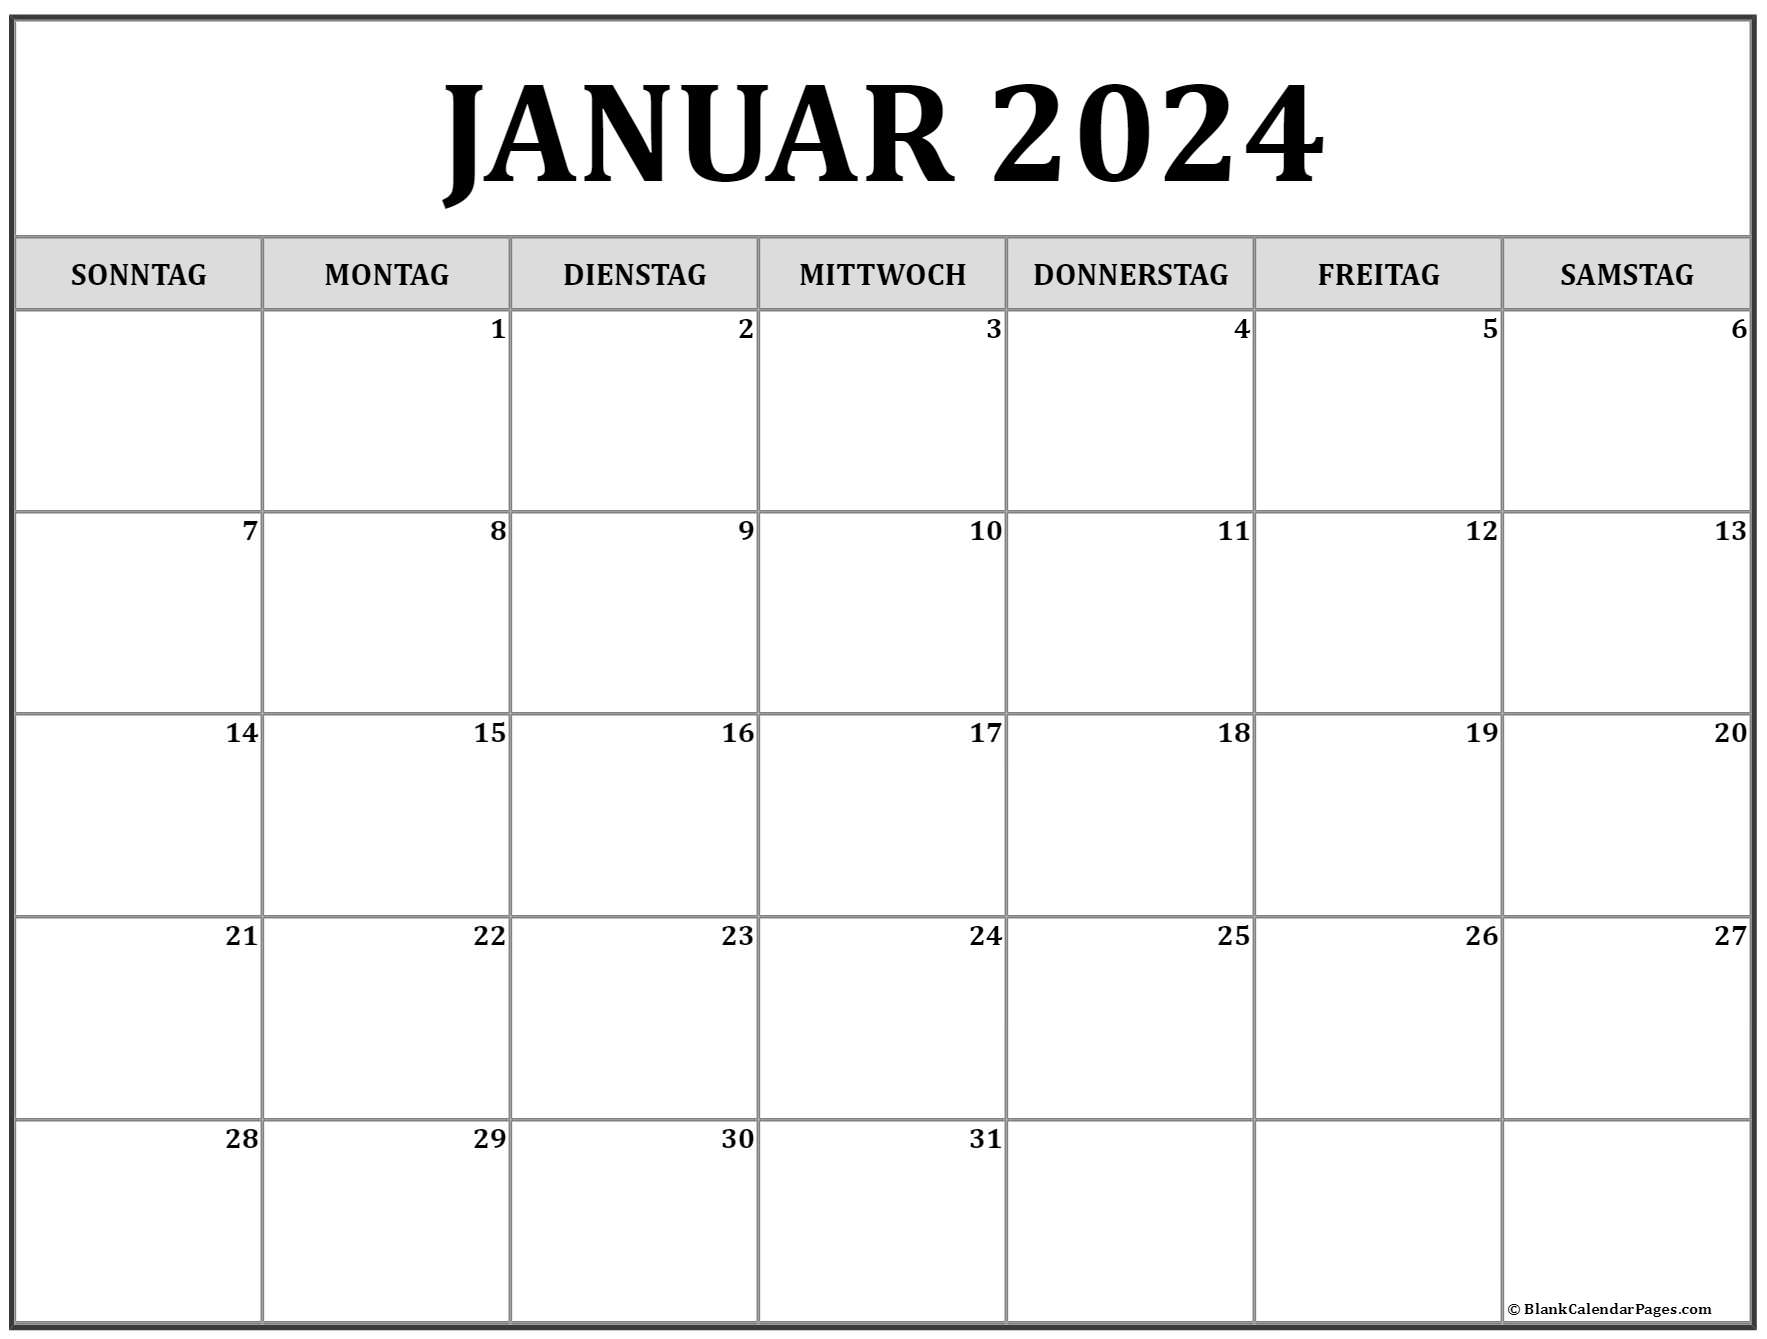 Januar 2022 kalender auf Deutsch | kalender 2022